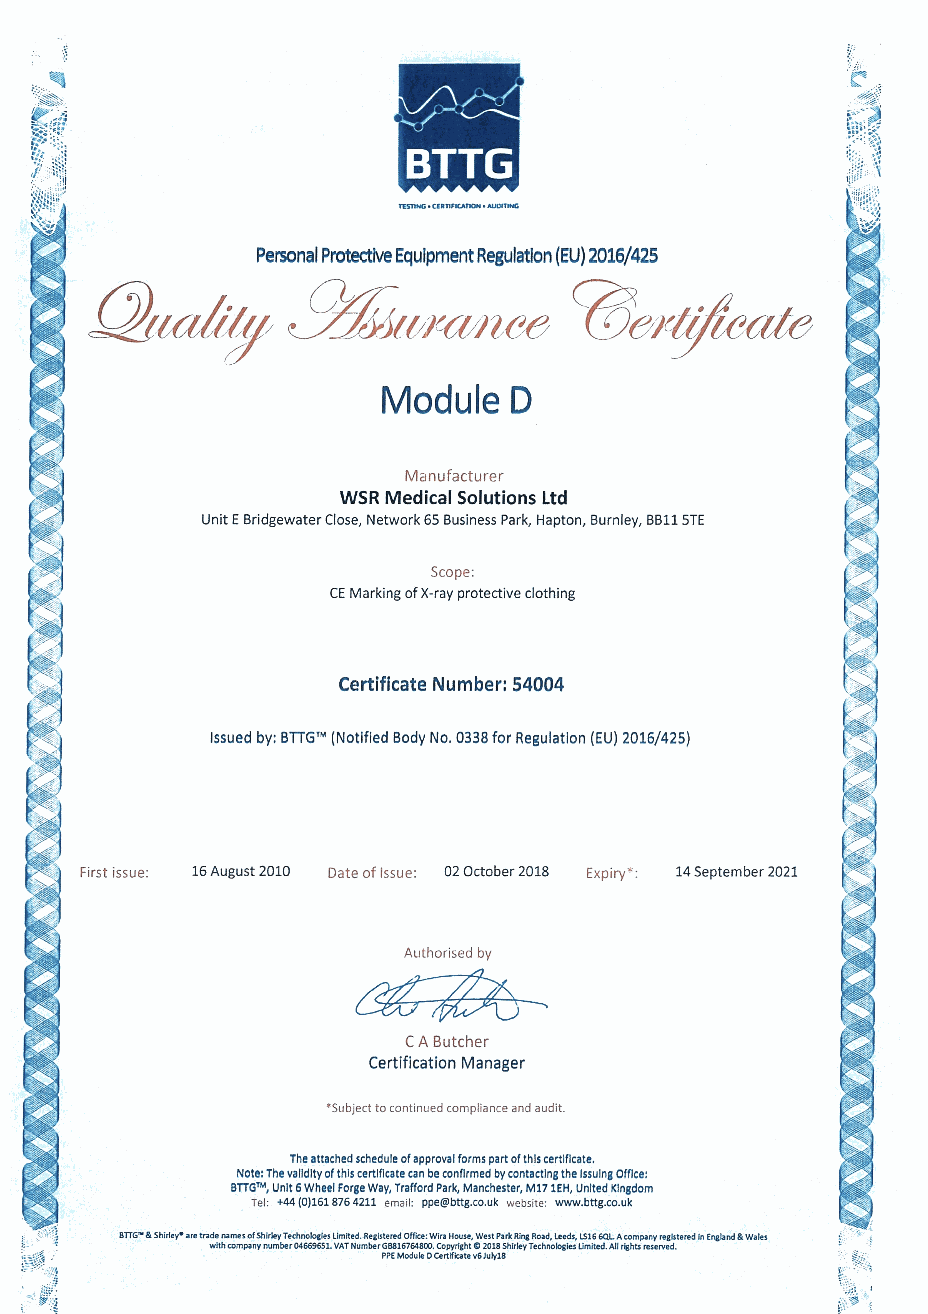 Module D UKCA certificate